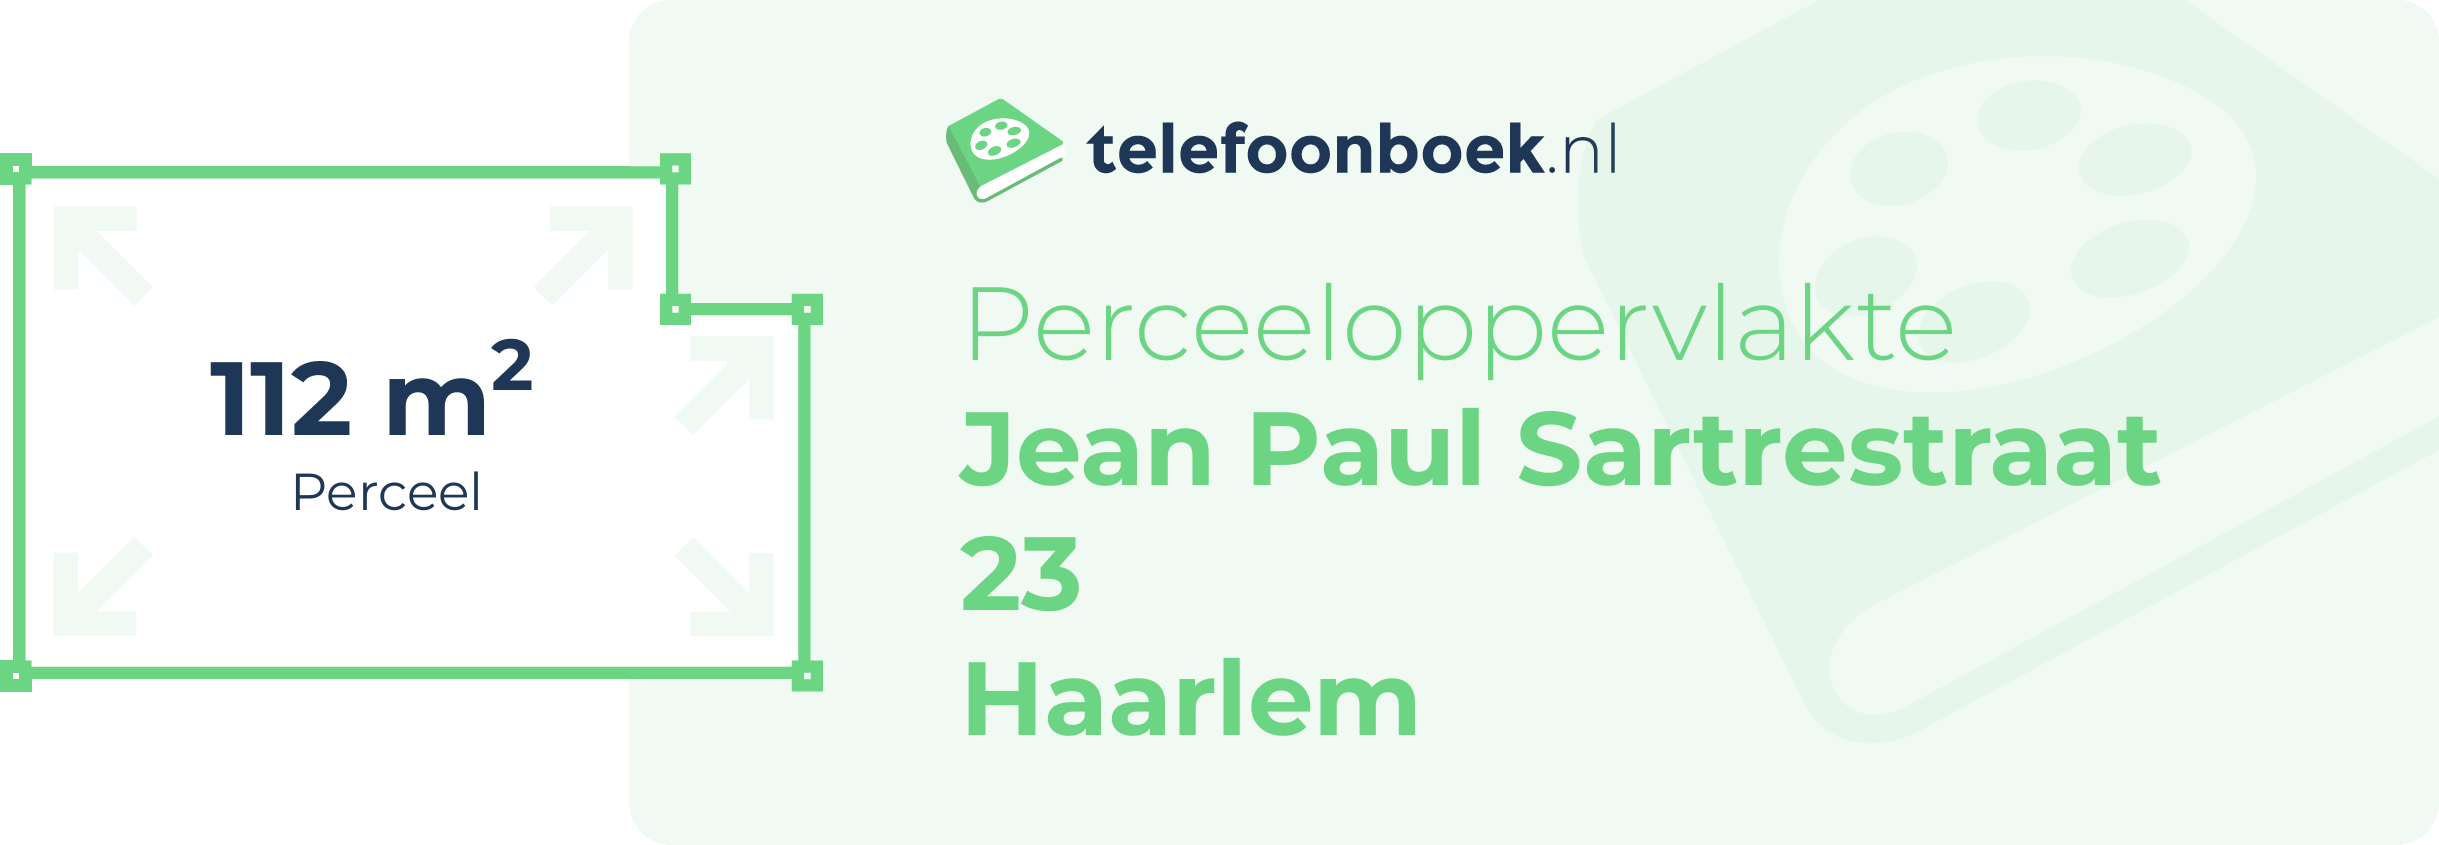 Perceeloppervlakte Jean Paul Sartrestraat 23 Haarlem